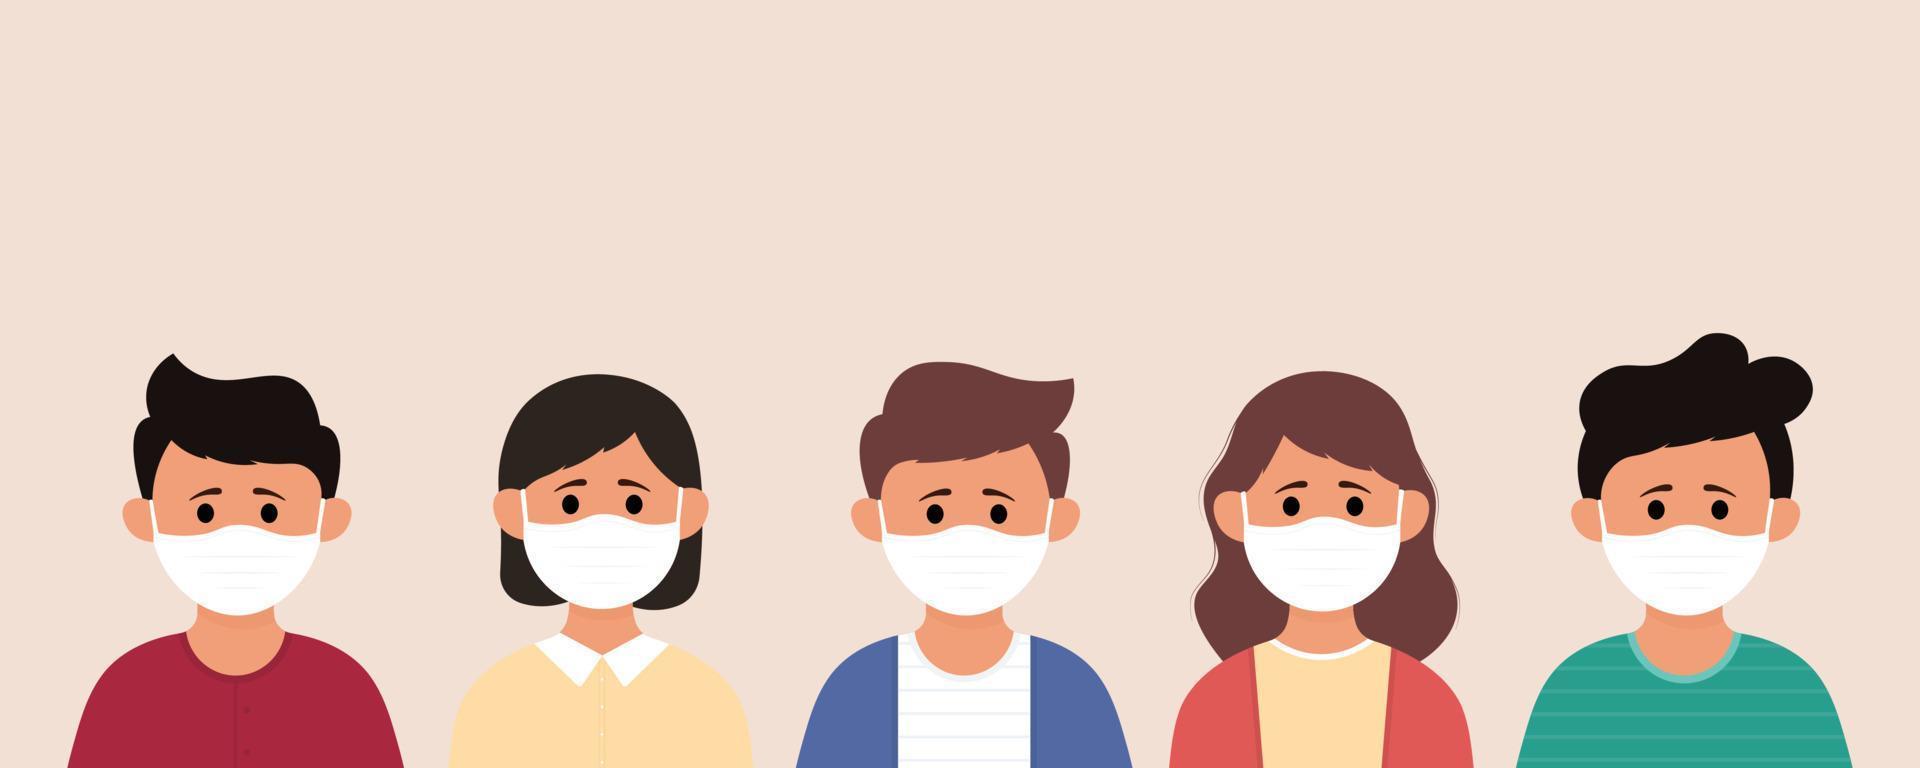 groupe d'enfants portant un masque médical pour prévenir les maladies, la grippe, la pollution de l'air, l'air contaminé, la pollution mondiale vecteur